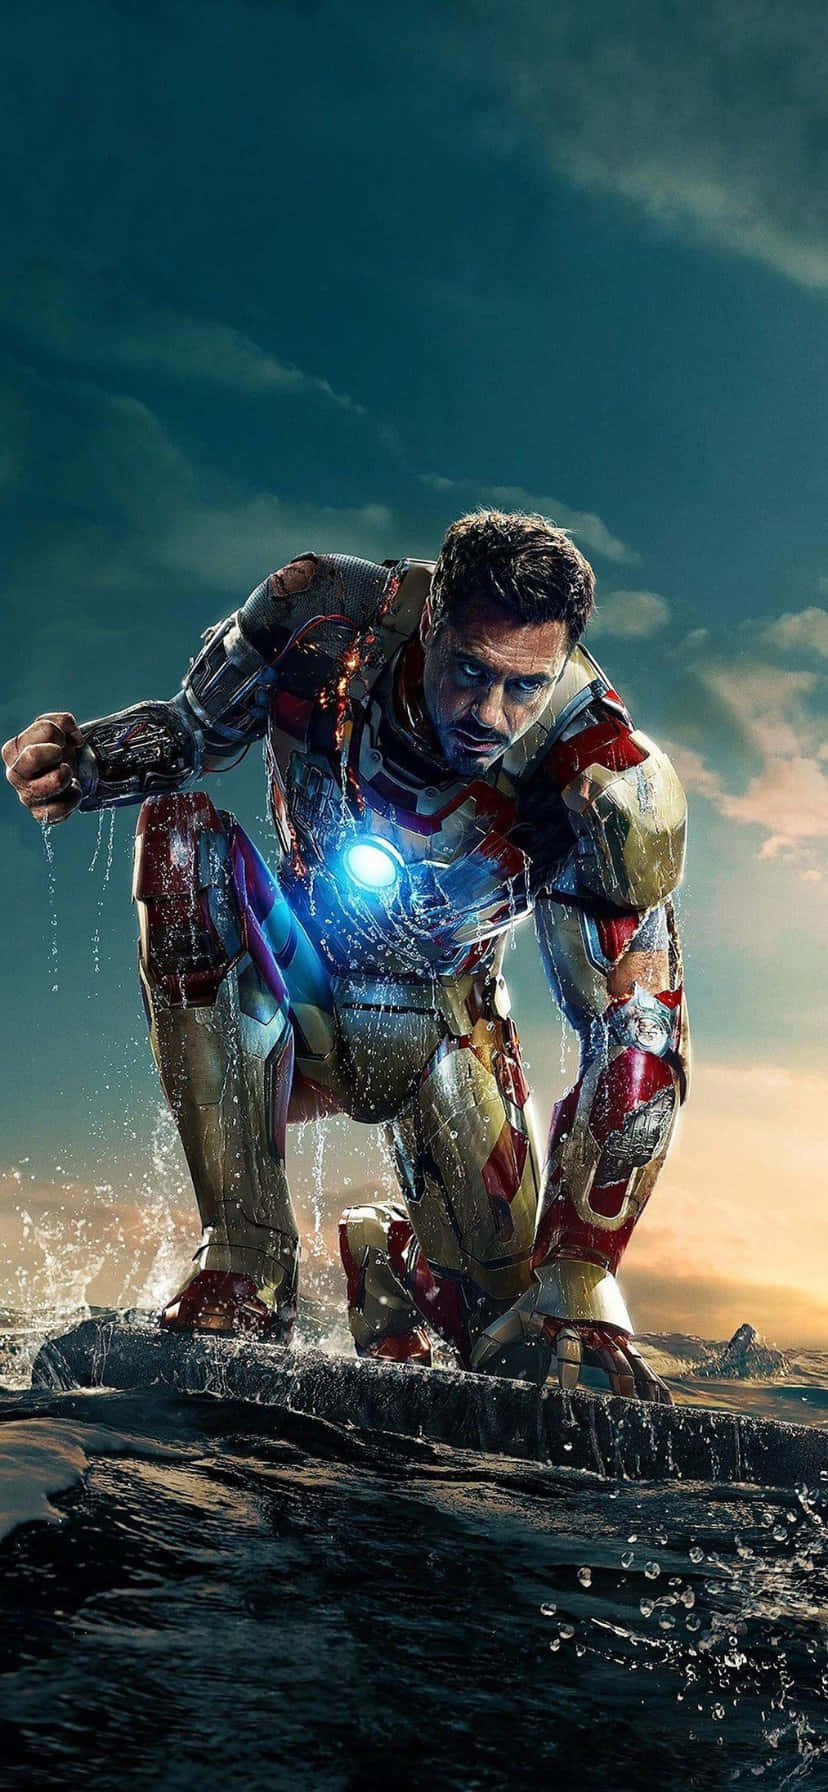 Iron Man Water Landingi Phone Wallpaper Wallpaper